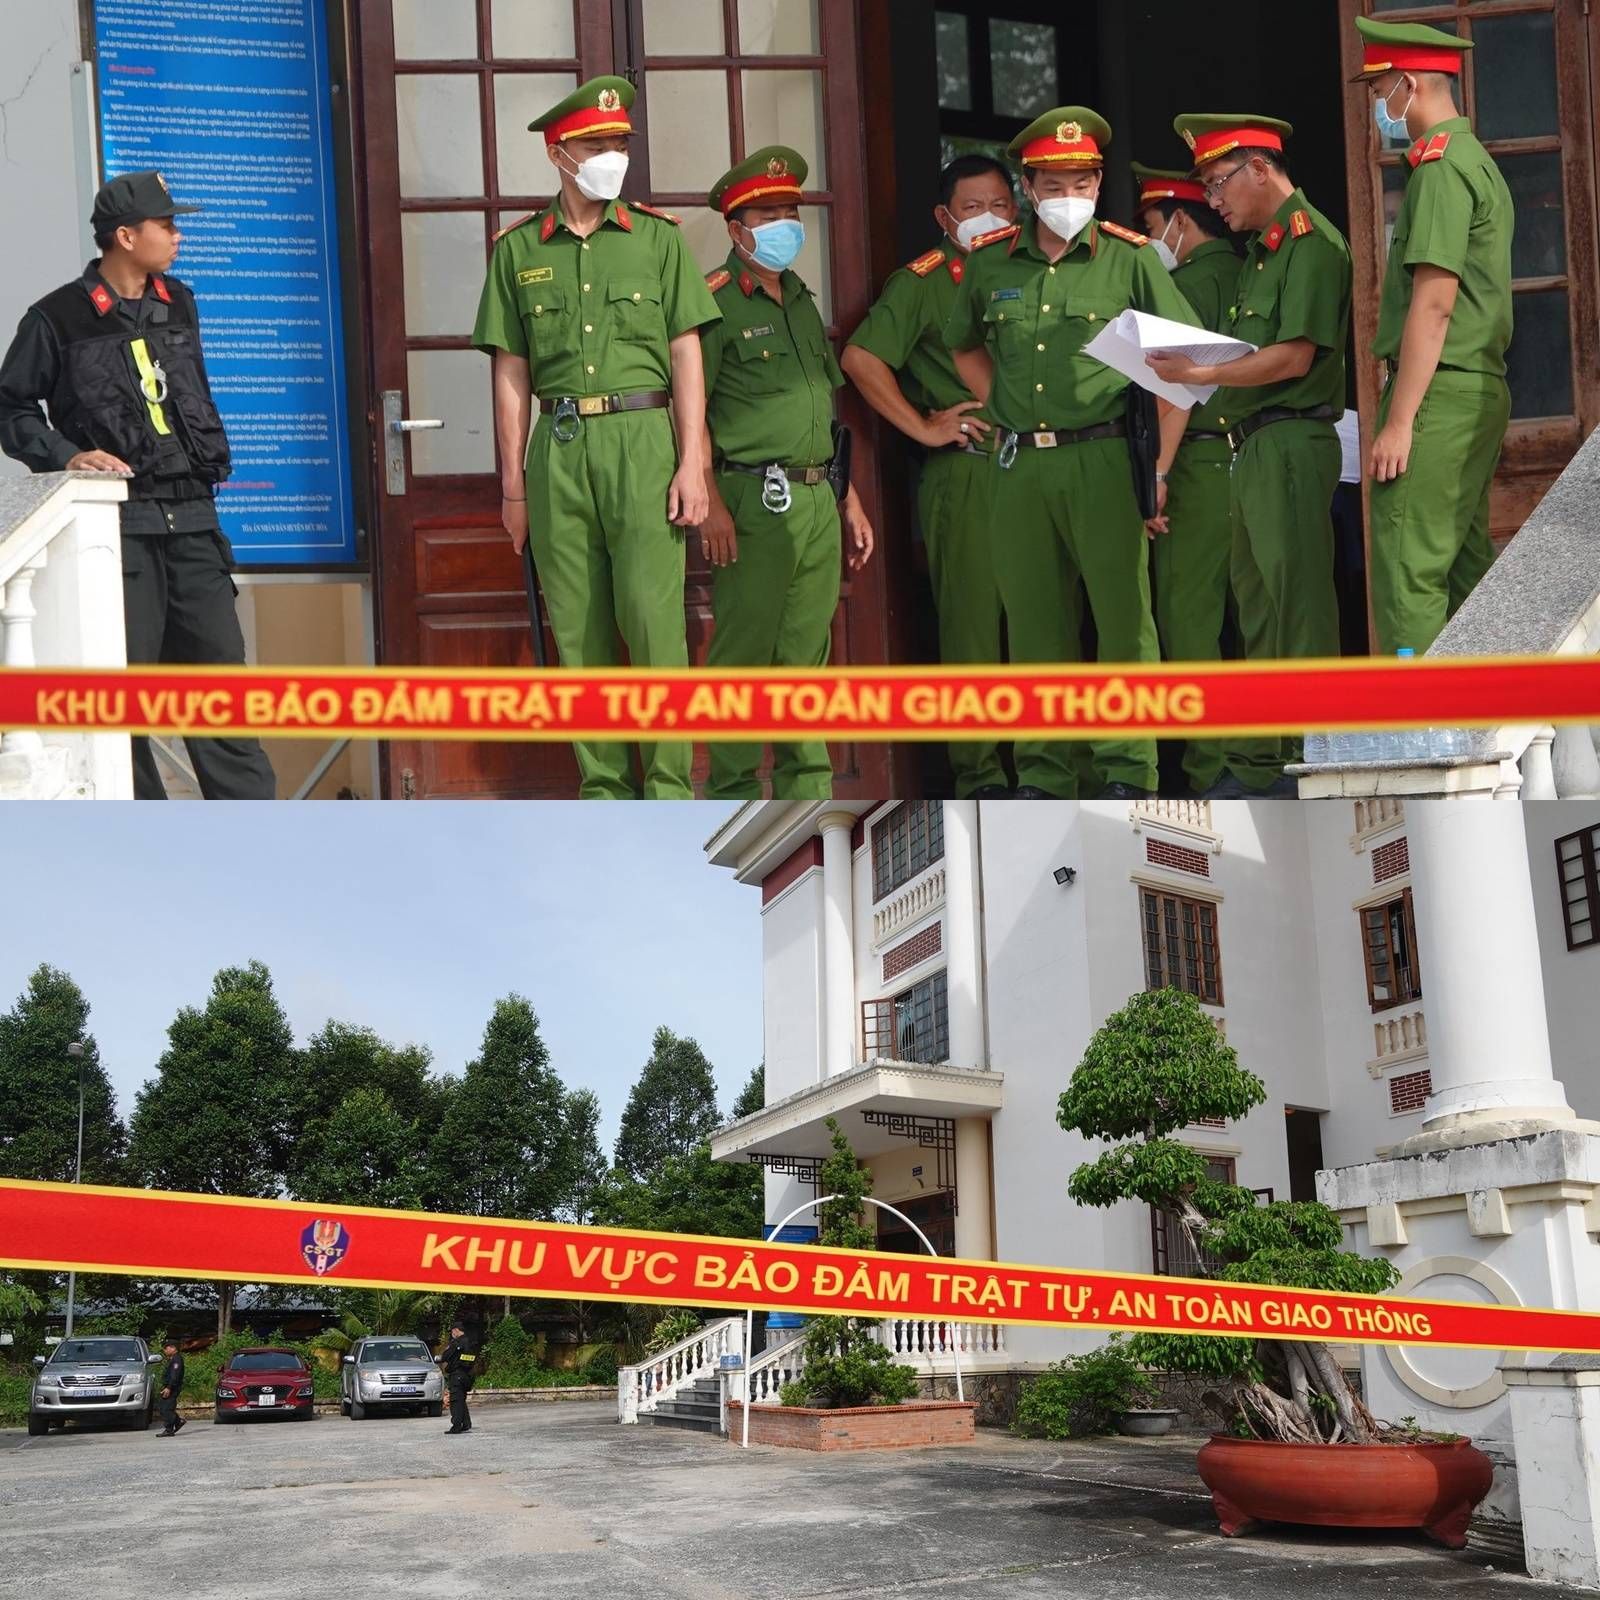 Vụ án Tịnh Thất Bồng Lai: Lộ diện người đứng sau loạt sai phạm 'động trời' khi cơ quan điều tra hỏi cung